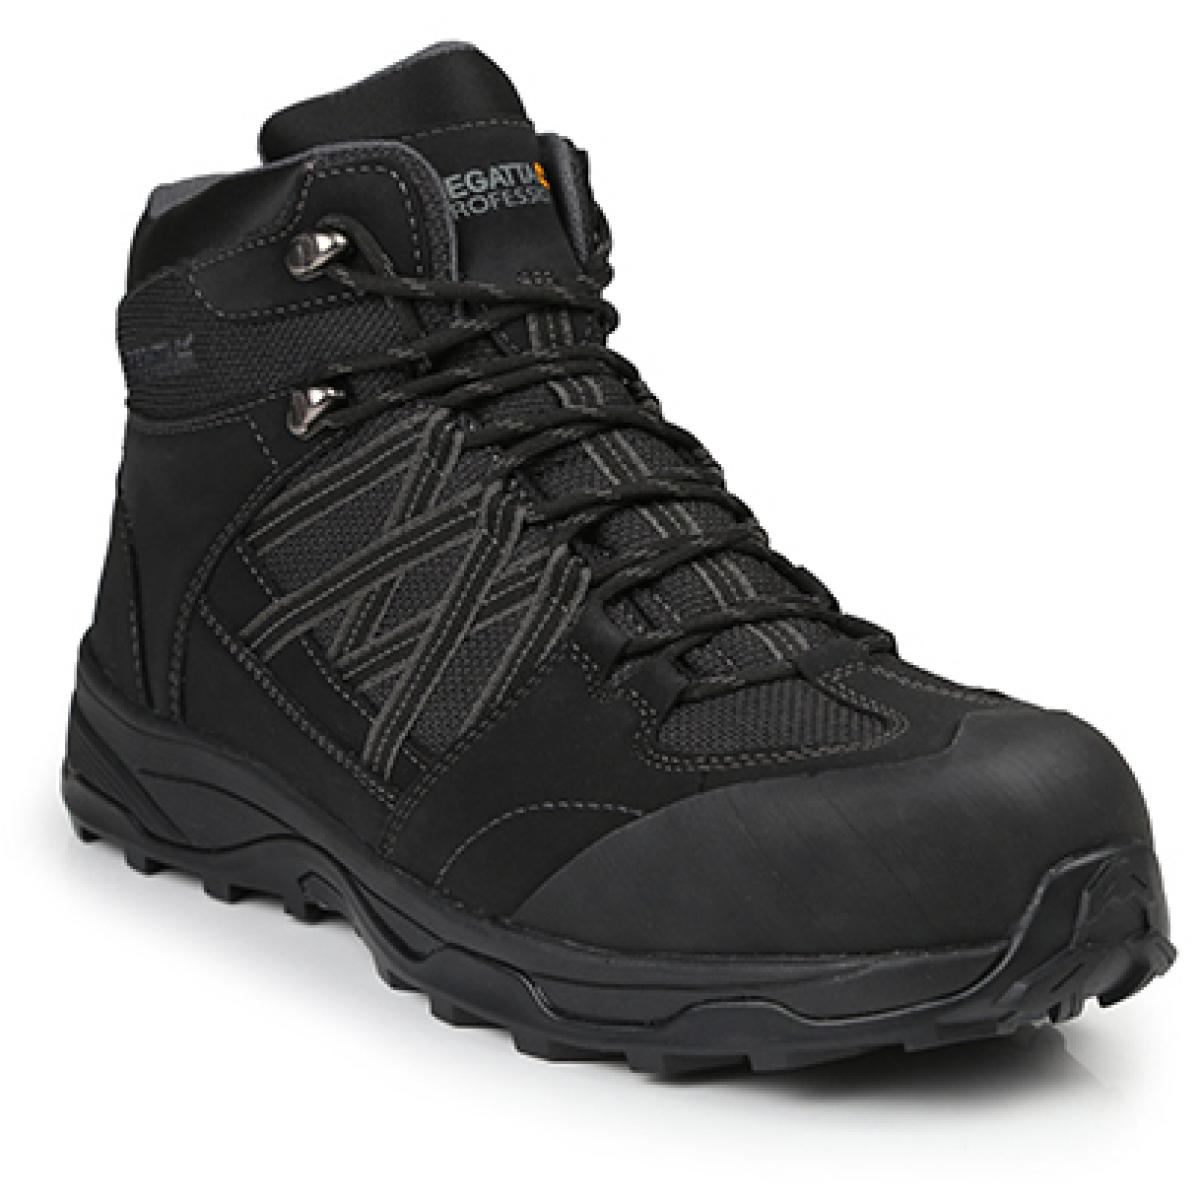 Hersteller: Regatta Safety Footwear Herstellernummer: TRK202 Artikelbezeichnung: Claystone S3 Safety Hiker - Sicherheitsschuhe Farbe: Black/Granite